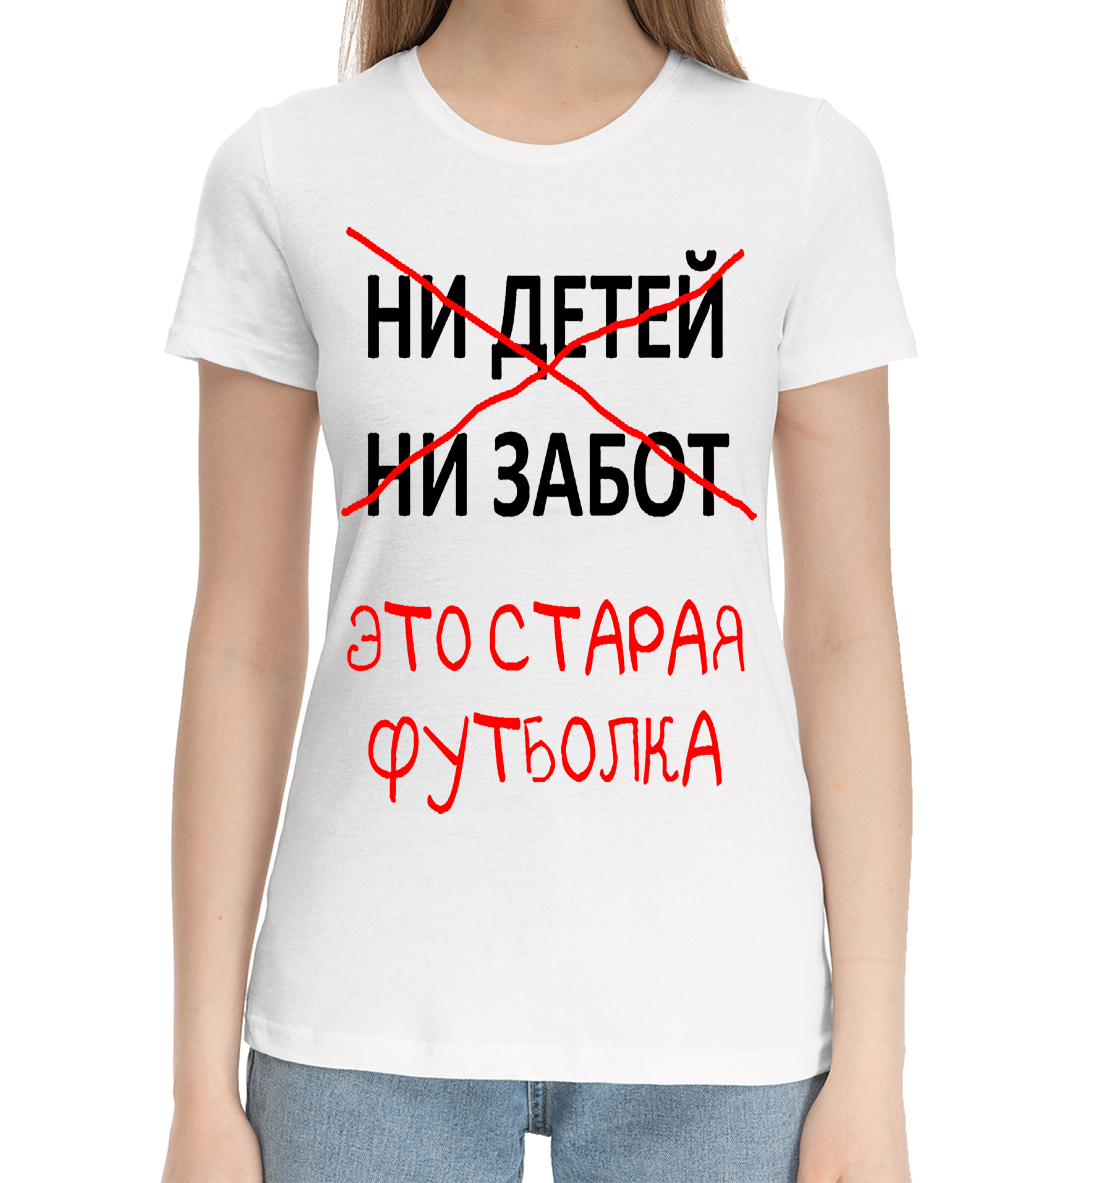 Женская Хлопковая футболка с надписью Ни детей ни забот это старая футболка, артикул NDP-179513-hfu-1mp